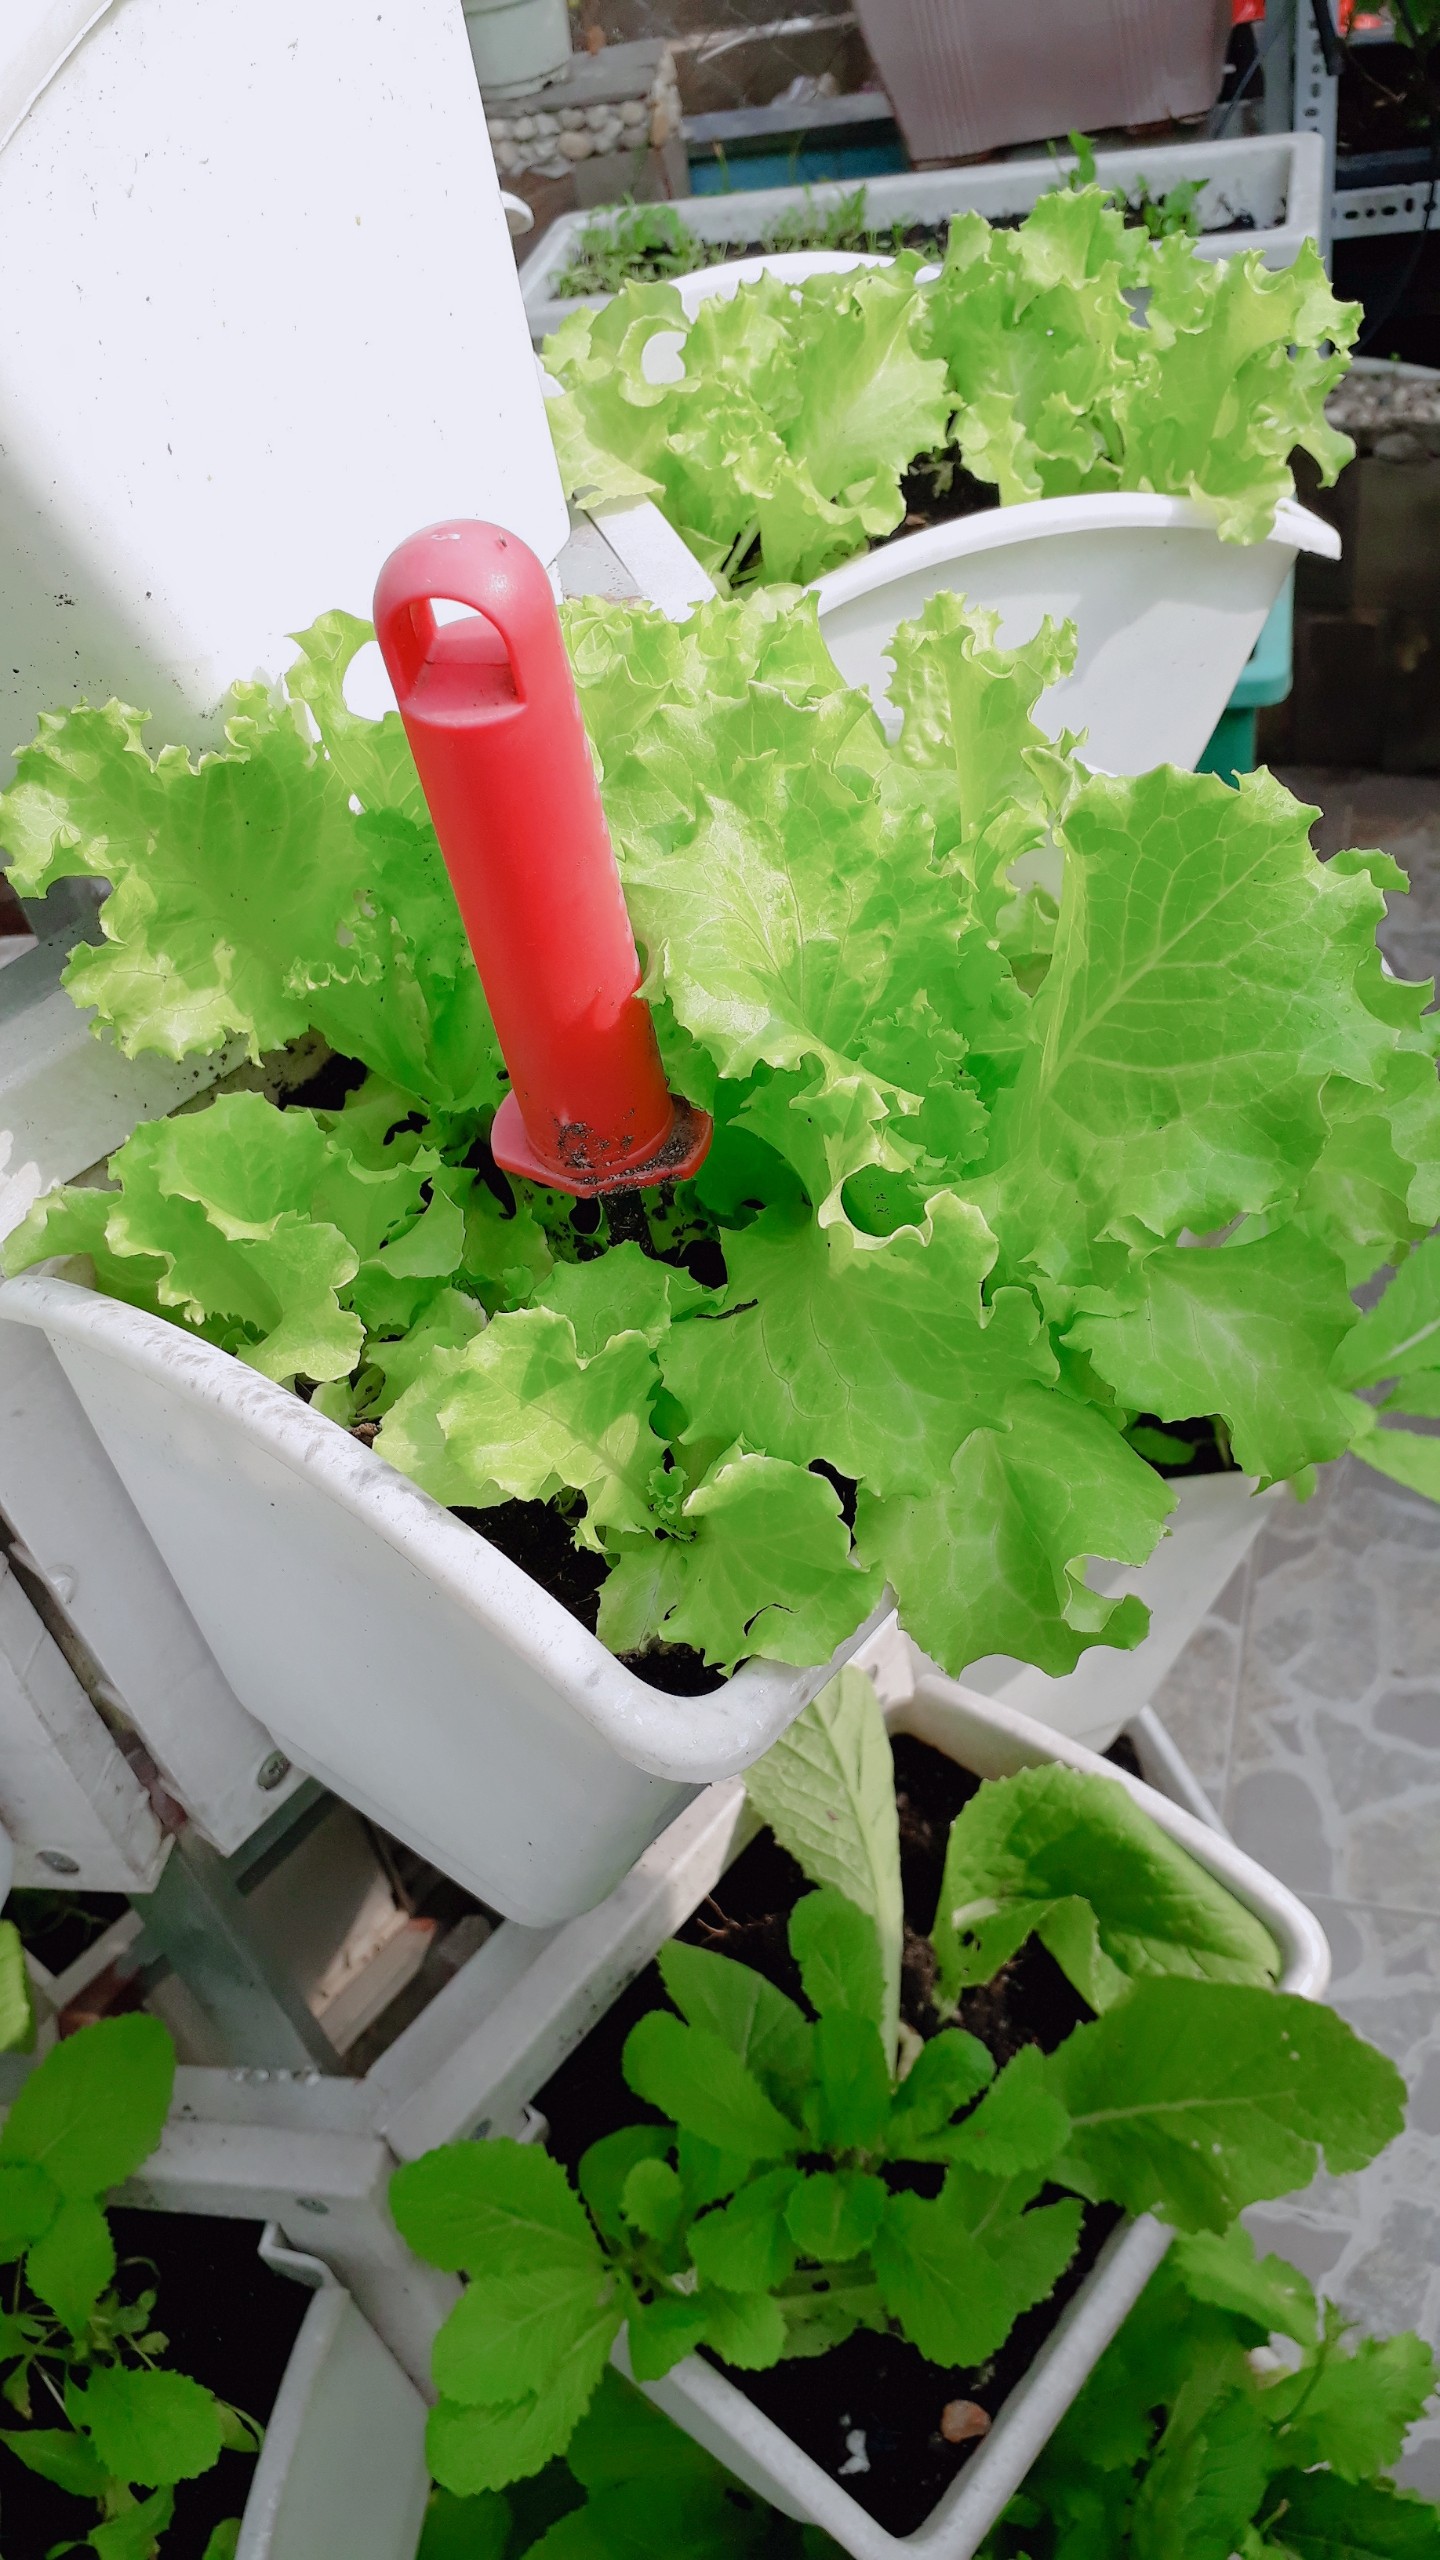 Hướng dẫn cách trồng rau sạch tại nhà để đạt được hiệu quả nhất